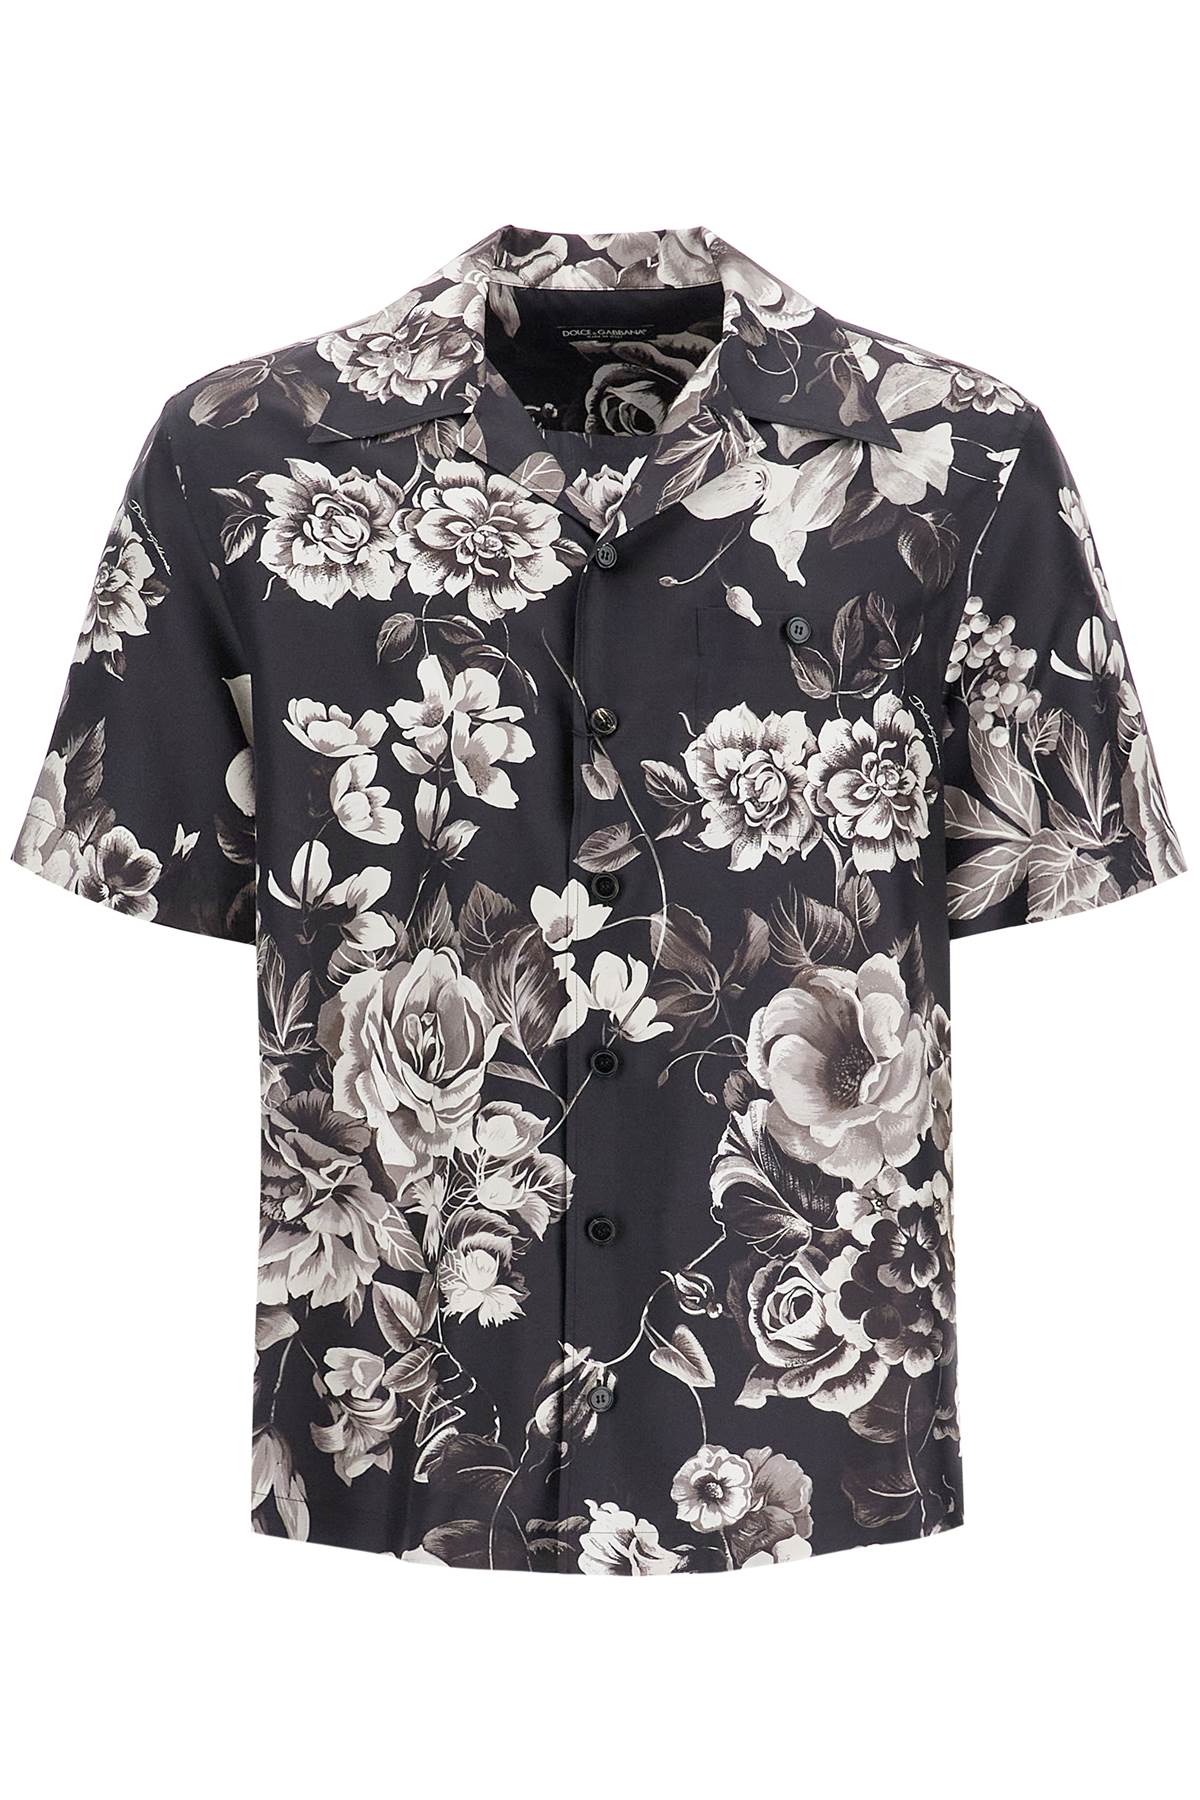 Dolce & Gabbana DOLCE & GABBANA hawaii silk shirt with floral print set